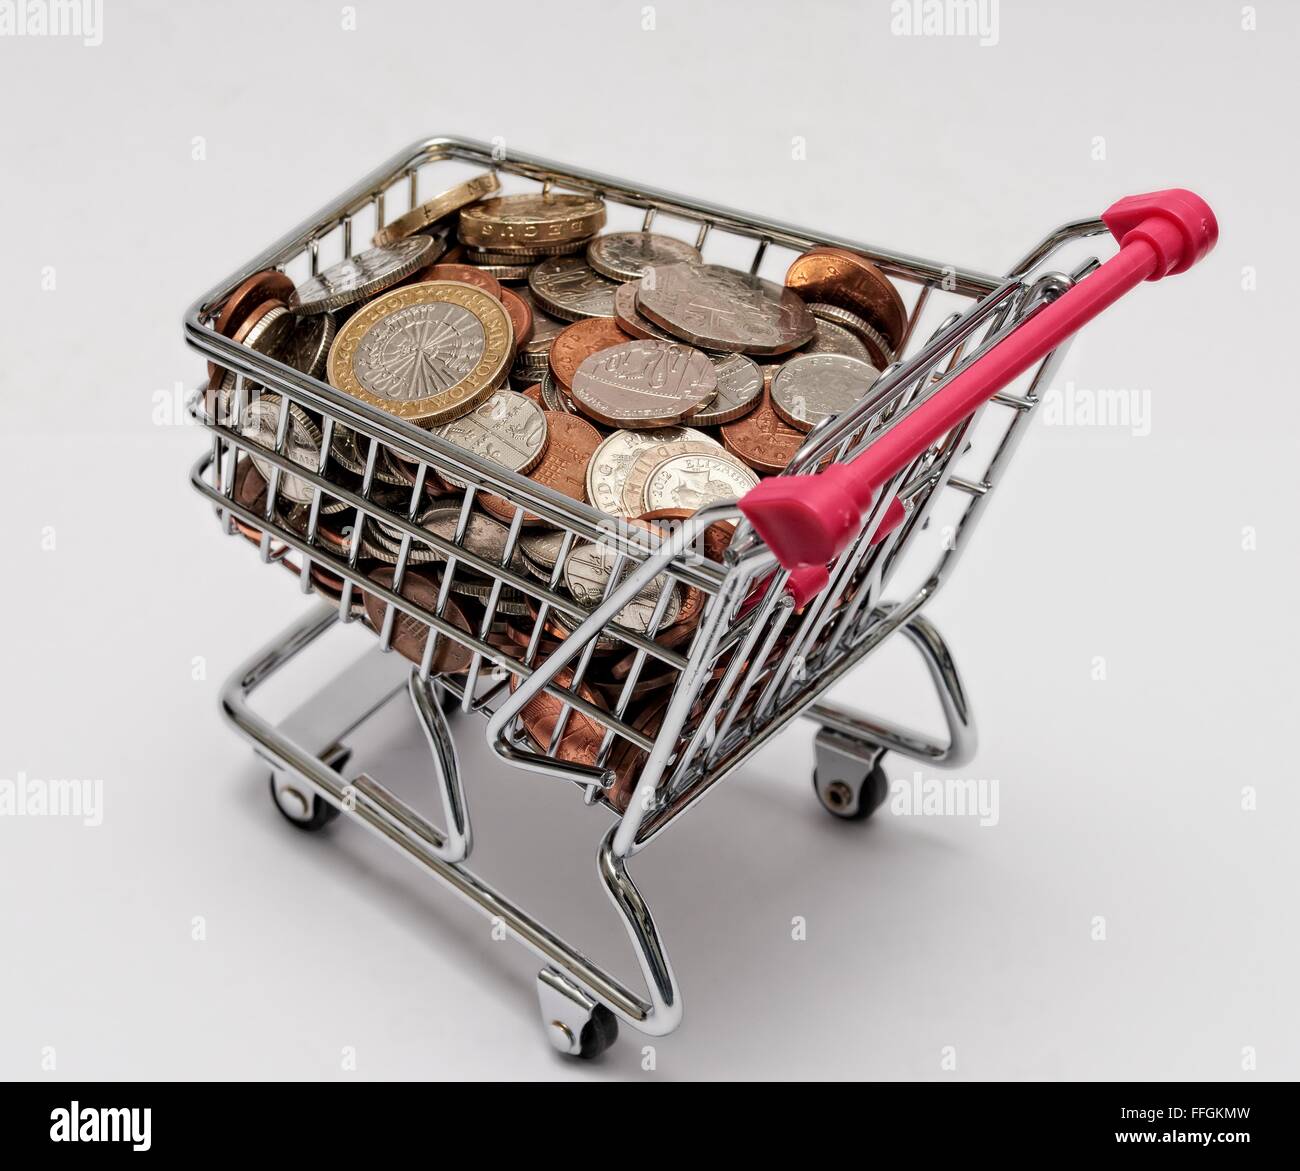 Piccolo supermercato carrello della spesa con le monete all'interno. Costo della vita concetto Foto Stock